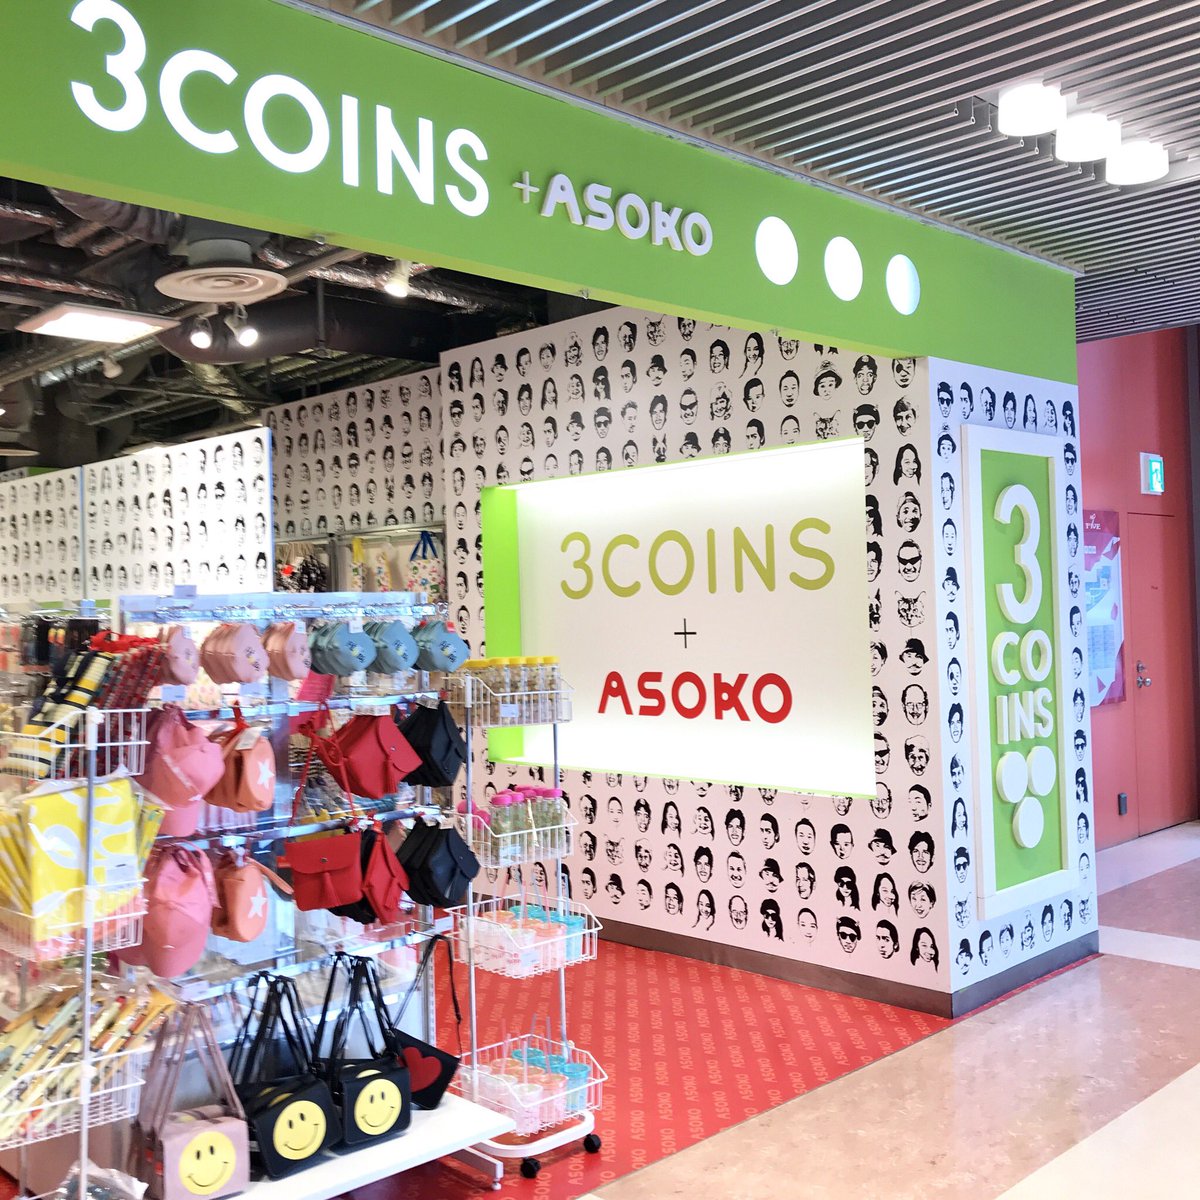 3coinsスリーコインズ 公式 Twitterissa 本日リニューアル 8 9 木 3coins Hep Five店に姉妹ブランド Asoko商品が登場 Asokoといえば なbuggy柄が目を引く店内にはユニークなasokoらしいアイテムがいっぱいです 大阪市内でasokoのアイテムが買えるのは